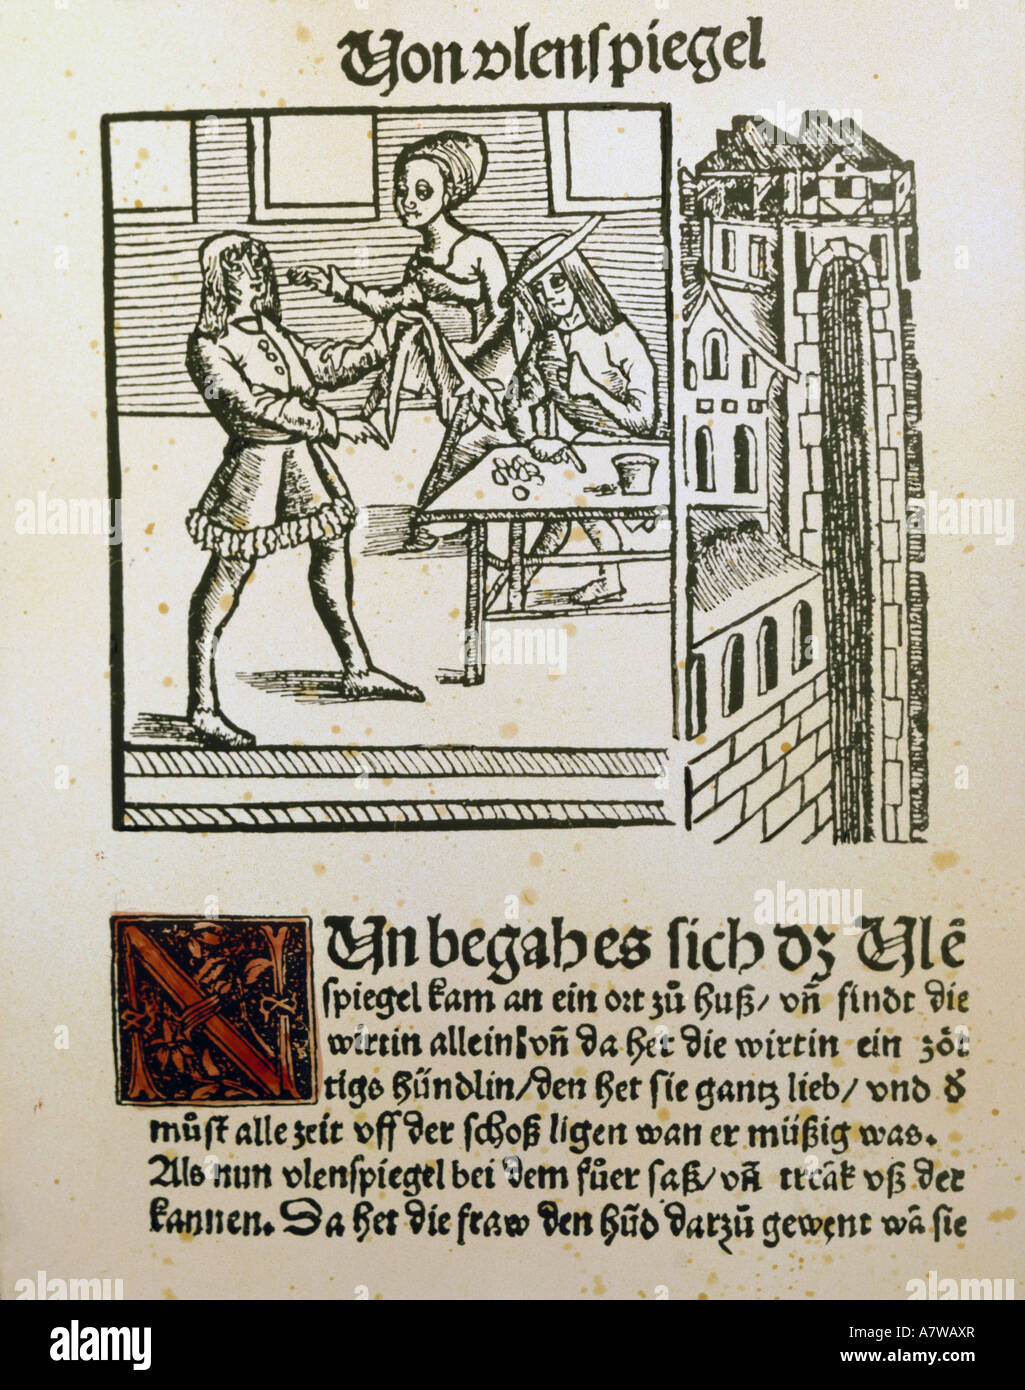 Literatur, "Eulenspiegel", Titel der 2. Sammlung von drolligen Geschichten, gedruckt von Johannes Grüninger, Strassburg, 1519, Schlossbibliothek Gotha, Stockfoto